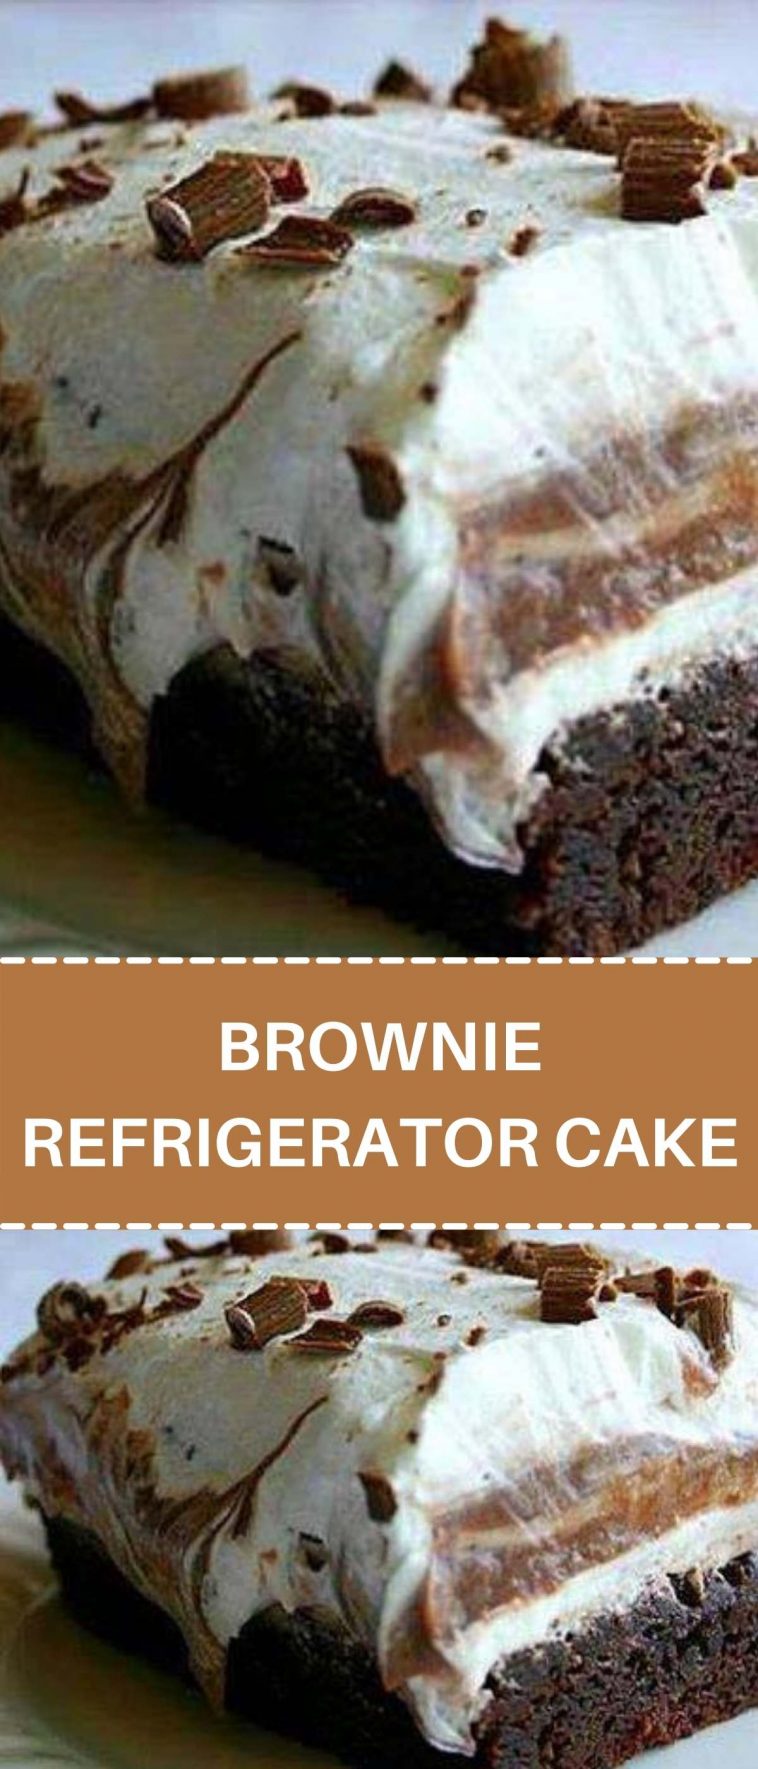 BROWNIE REFRIGERATOR CAKE